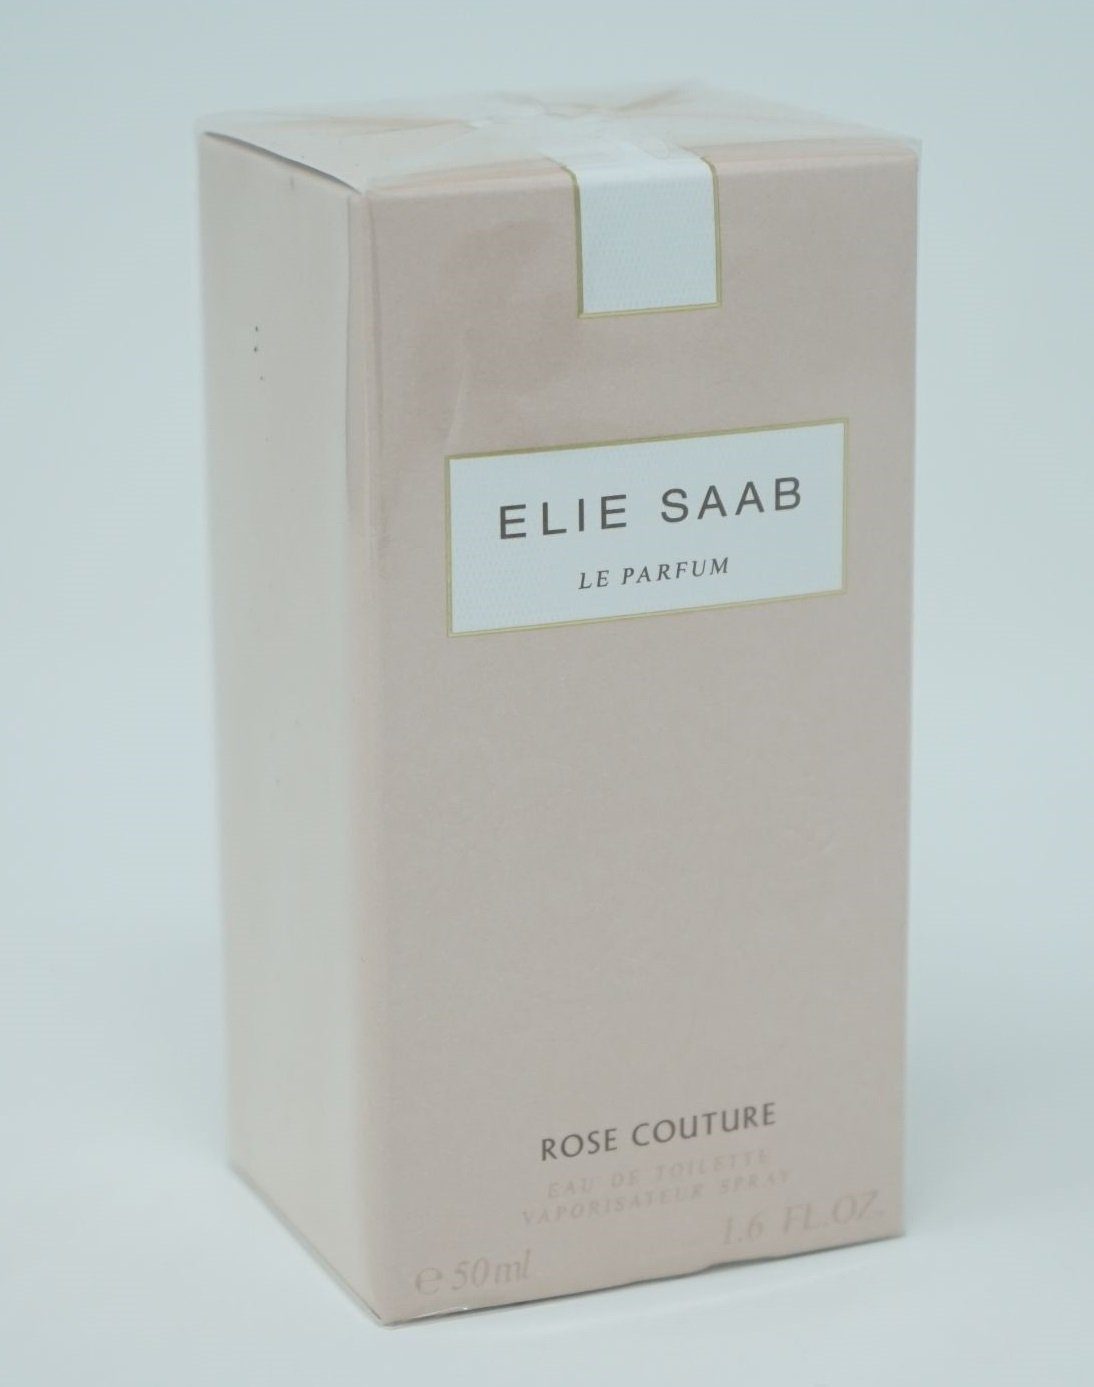 LANCOME ELIE SAAB Eau de Toilette Elie Saab Le Parfum Rose Couture Eau de Toilette Spray 50 ml | Lippenstifte